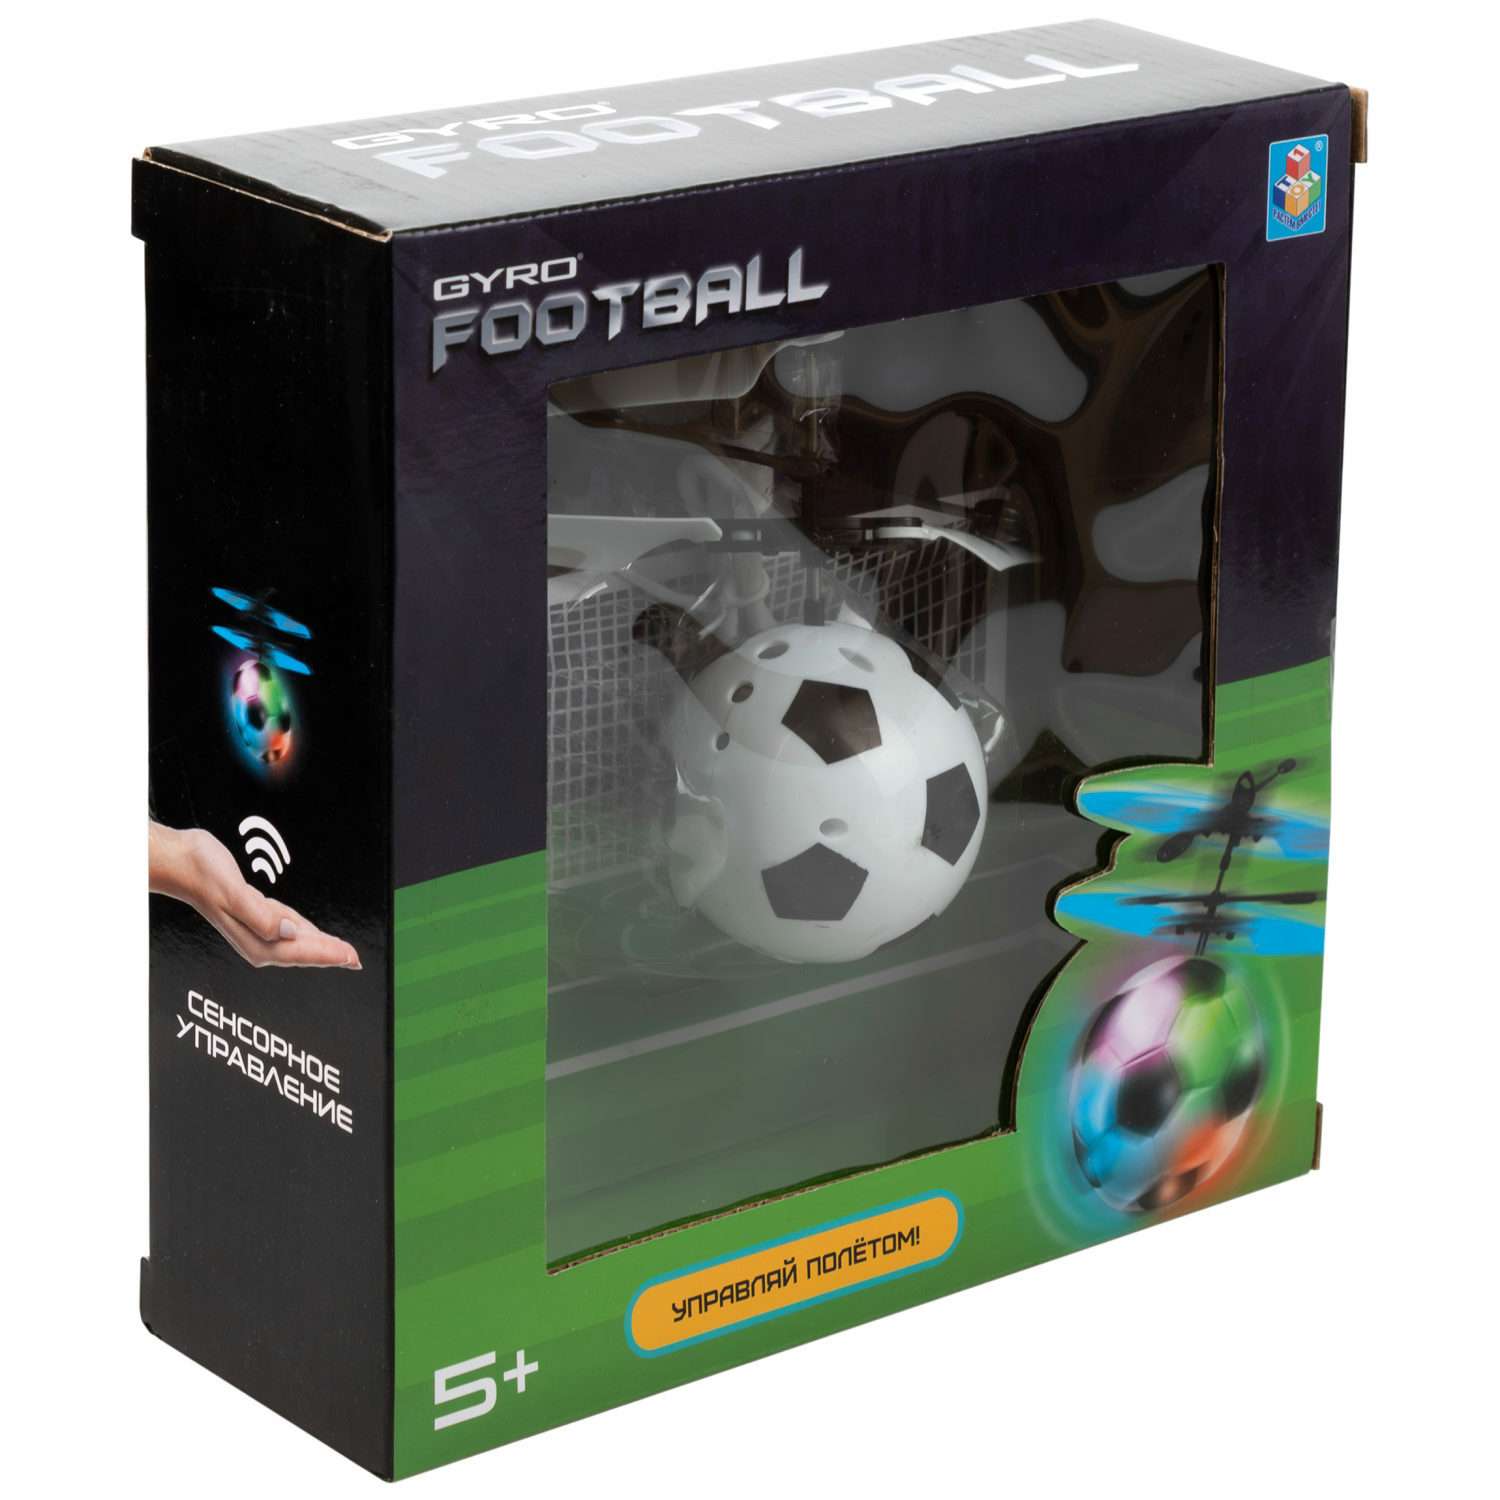 Интерактивная игрушка 1TOY Gyro-FOOTBALL шар на сенсорном управлении со световыми эффектами - фото 4